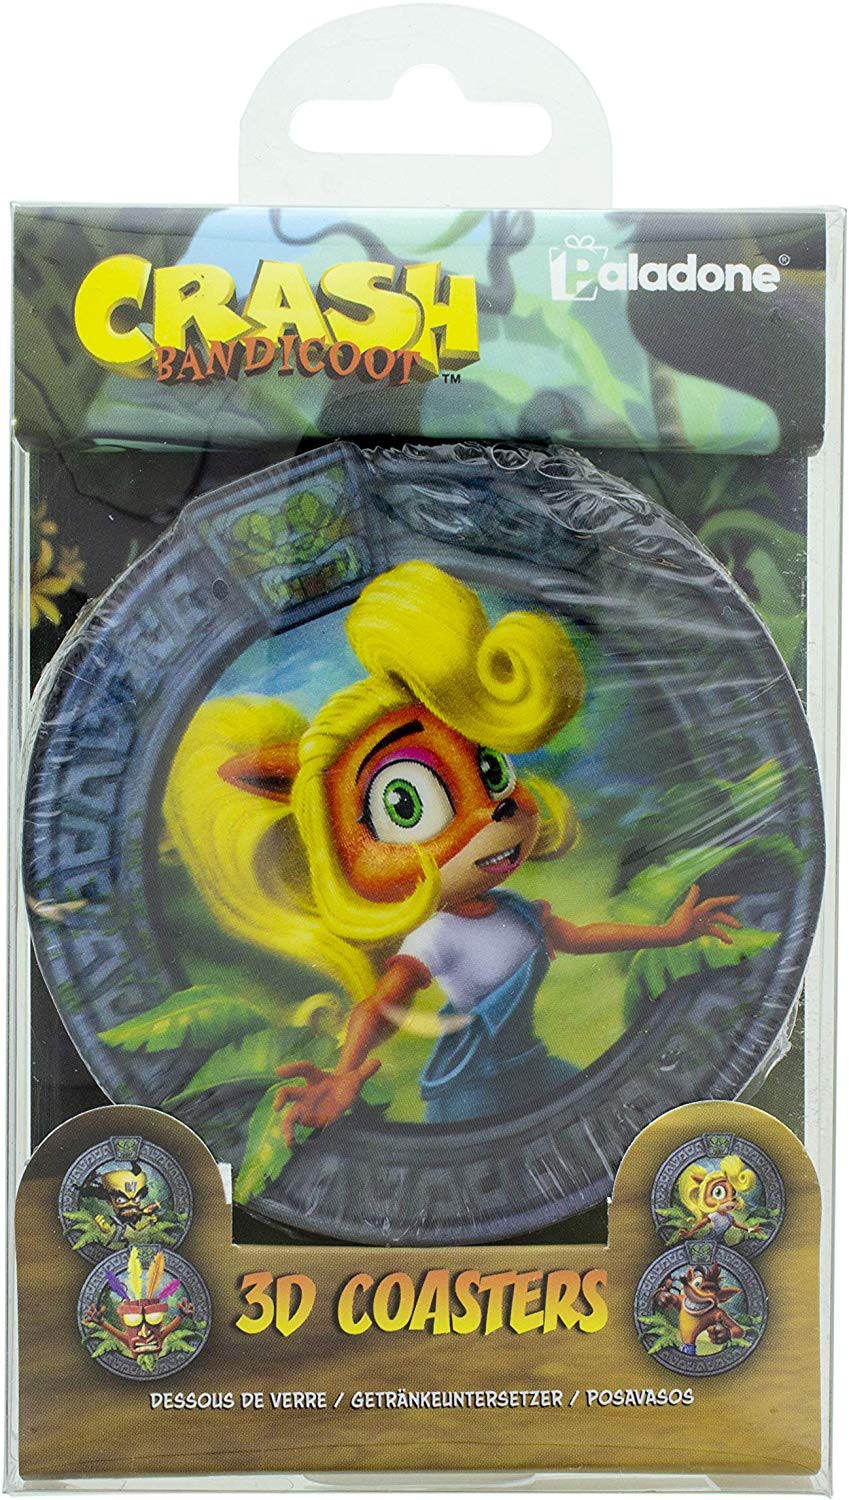 Crash Bandicoot 3D Coasters